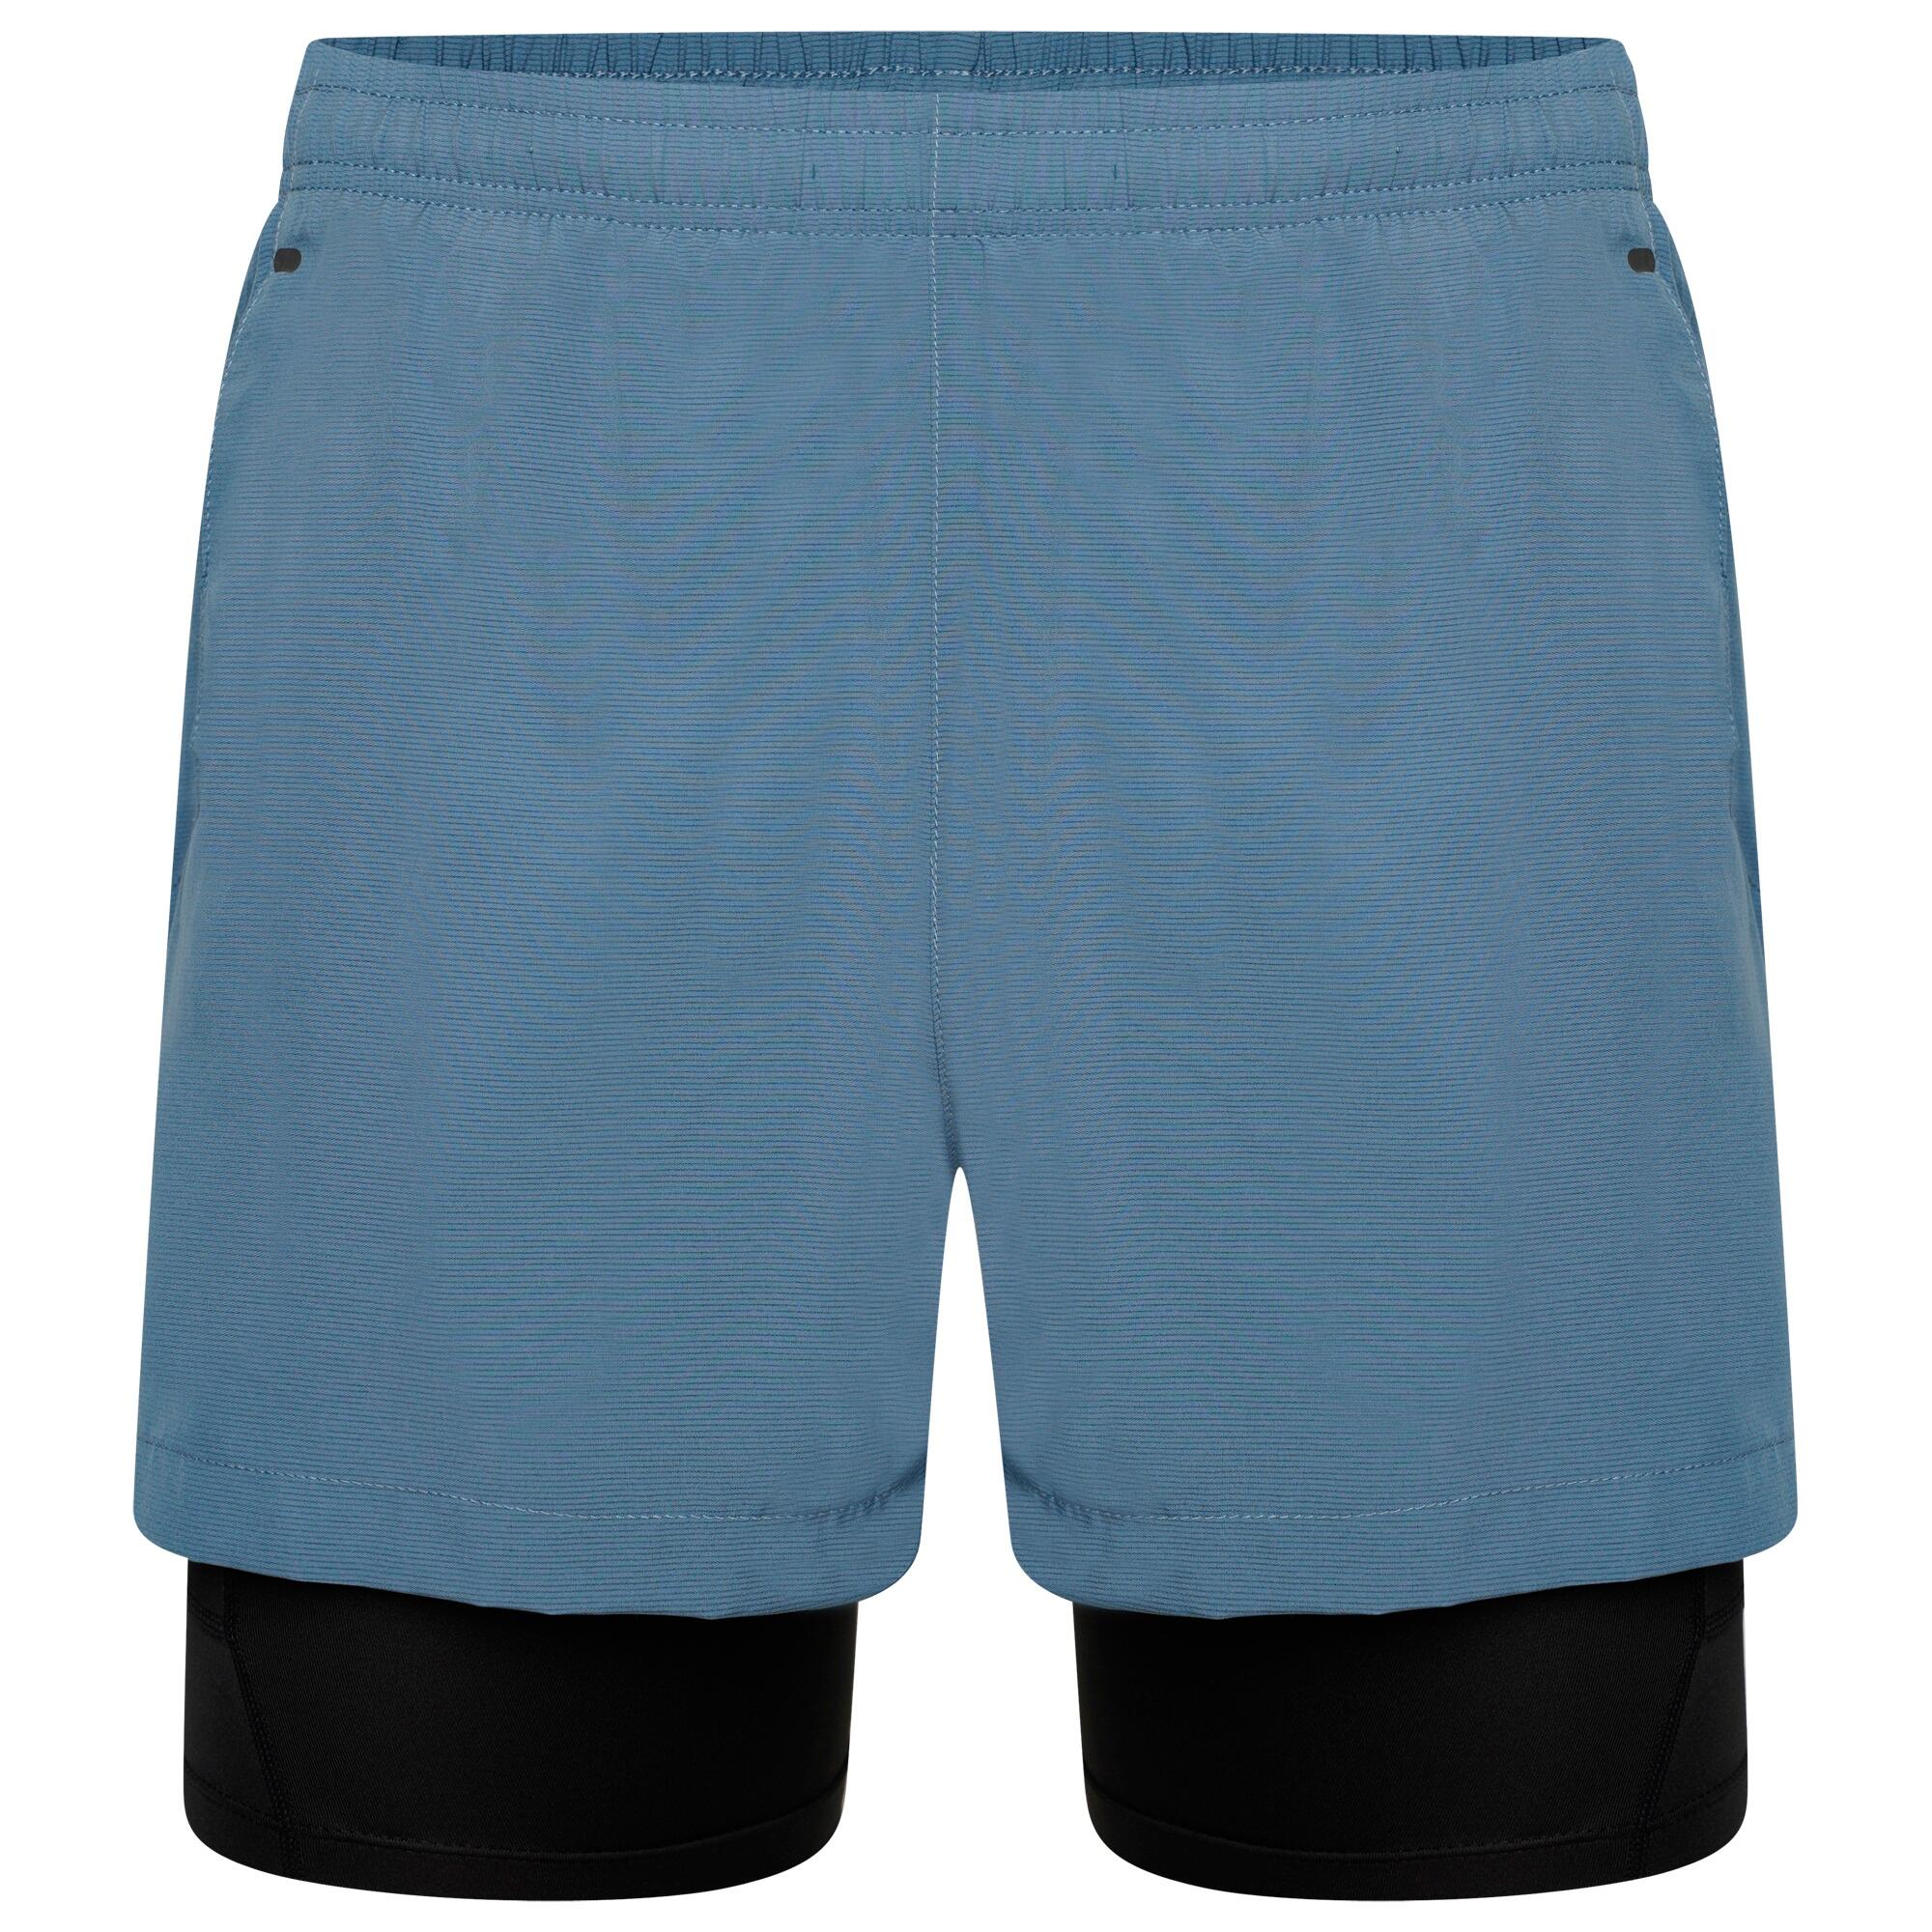 DARE 2B Mens Recreate II 2 in 1 Shorts (Stellar Blue)